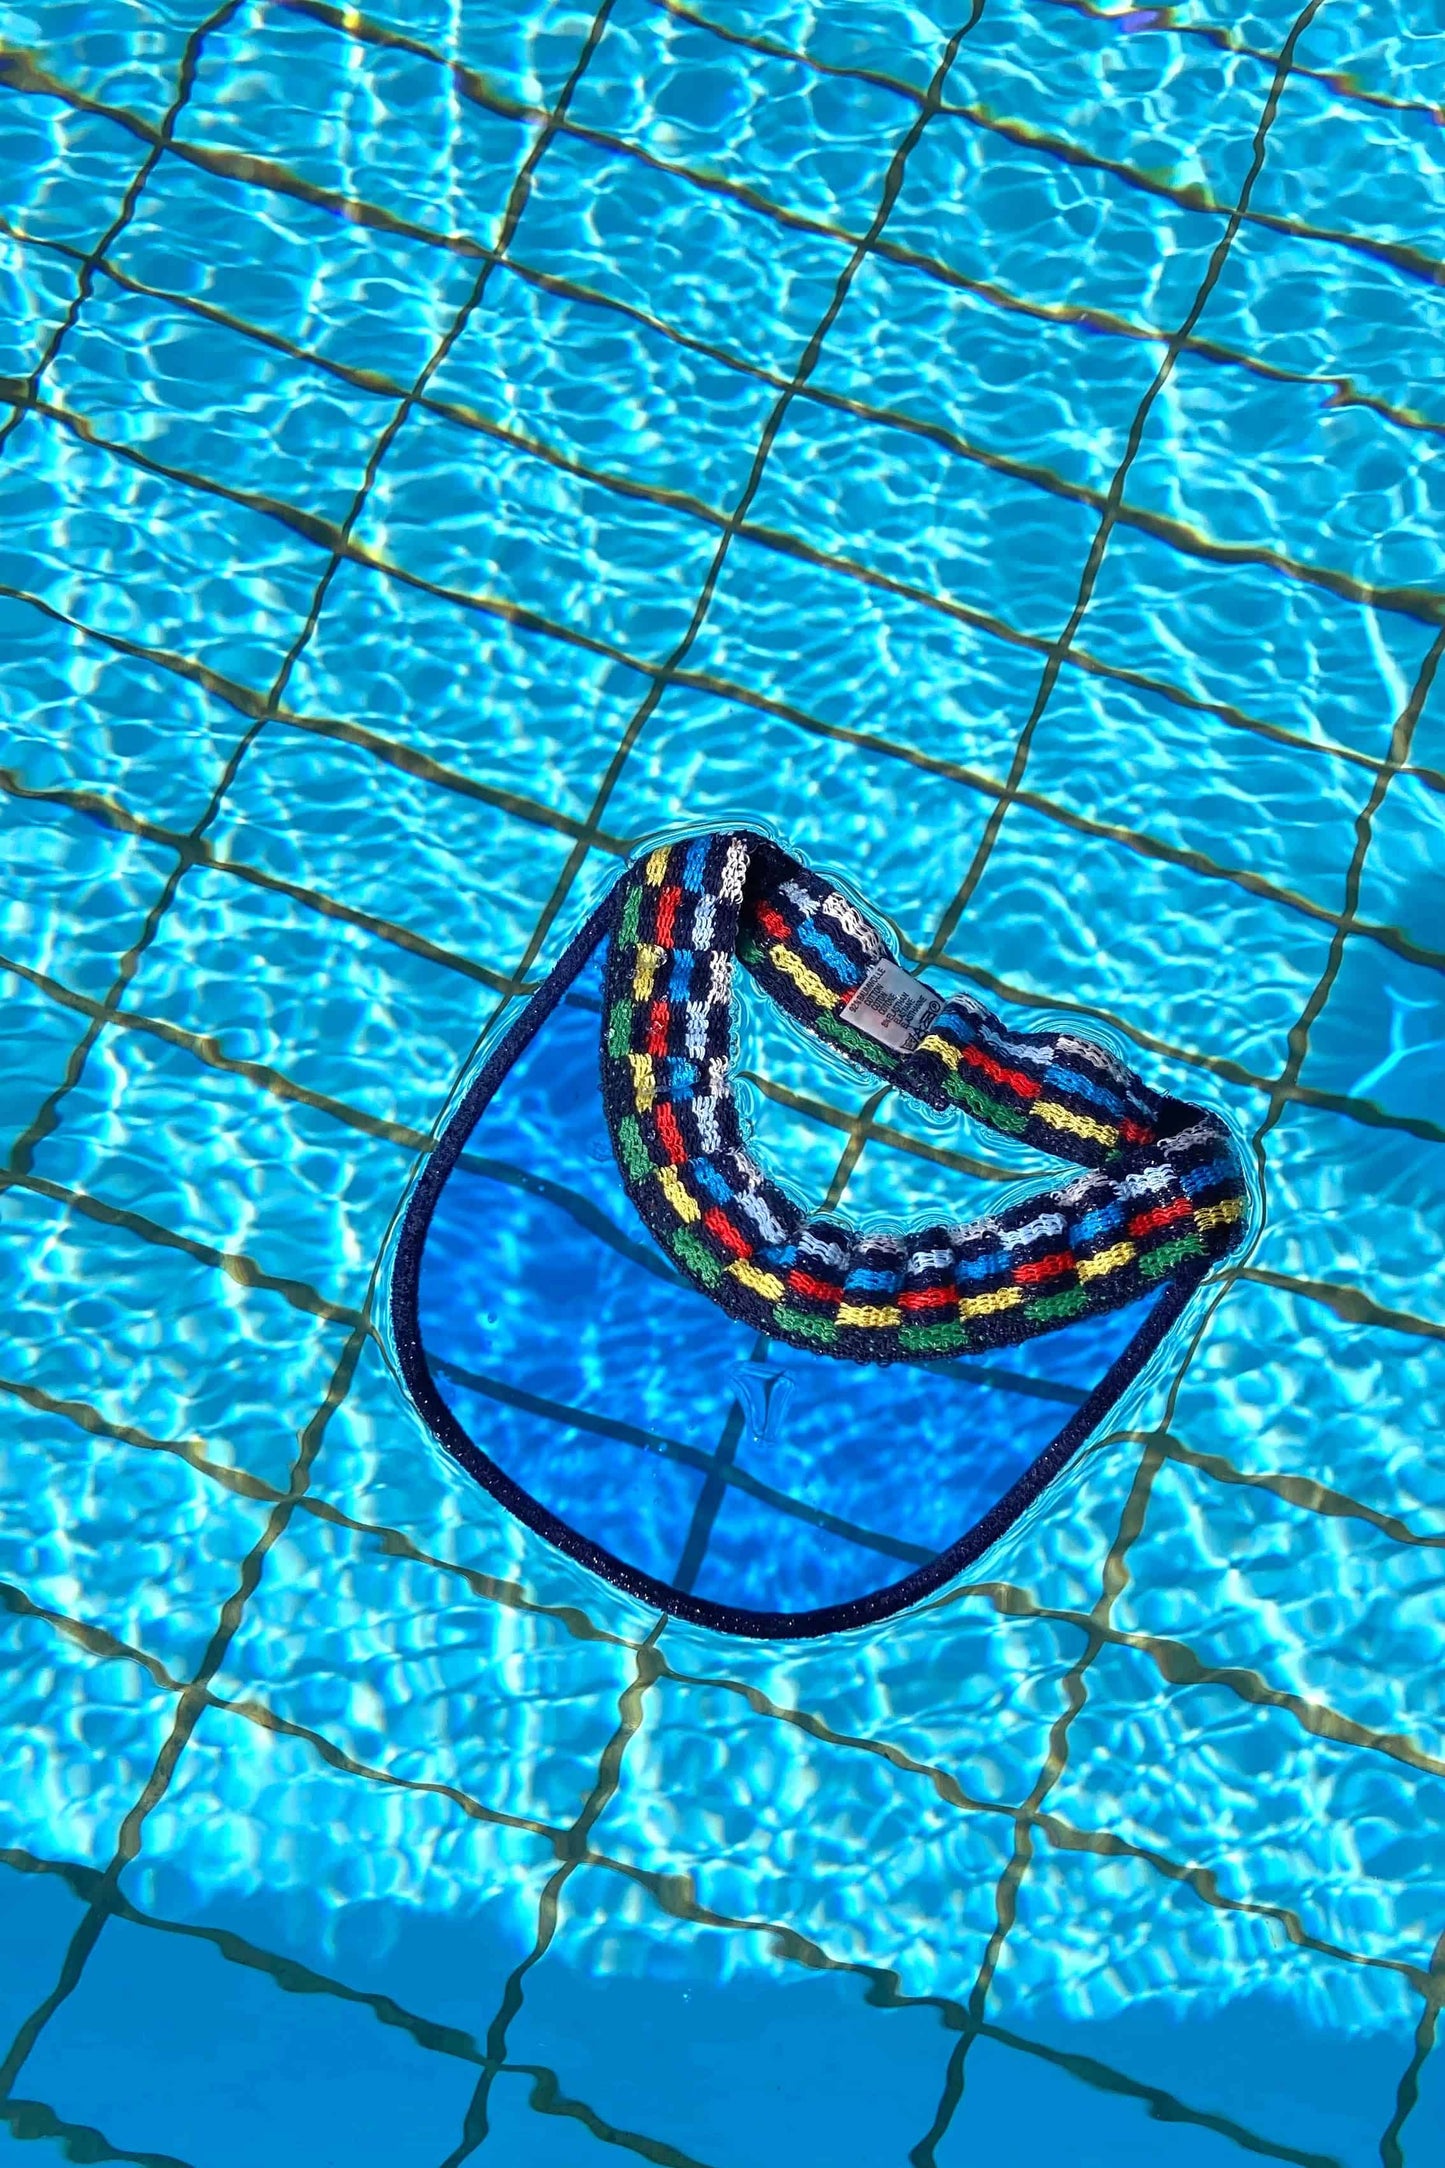 PENTA Vintage Visor floating in pool